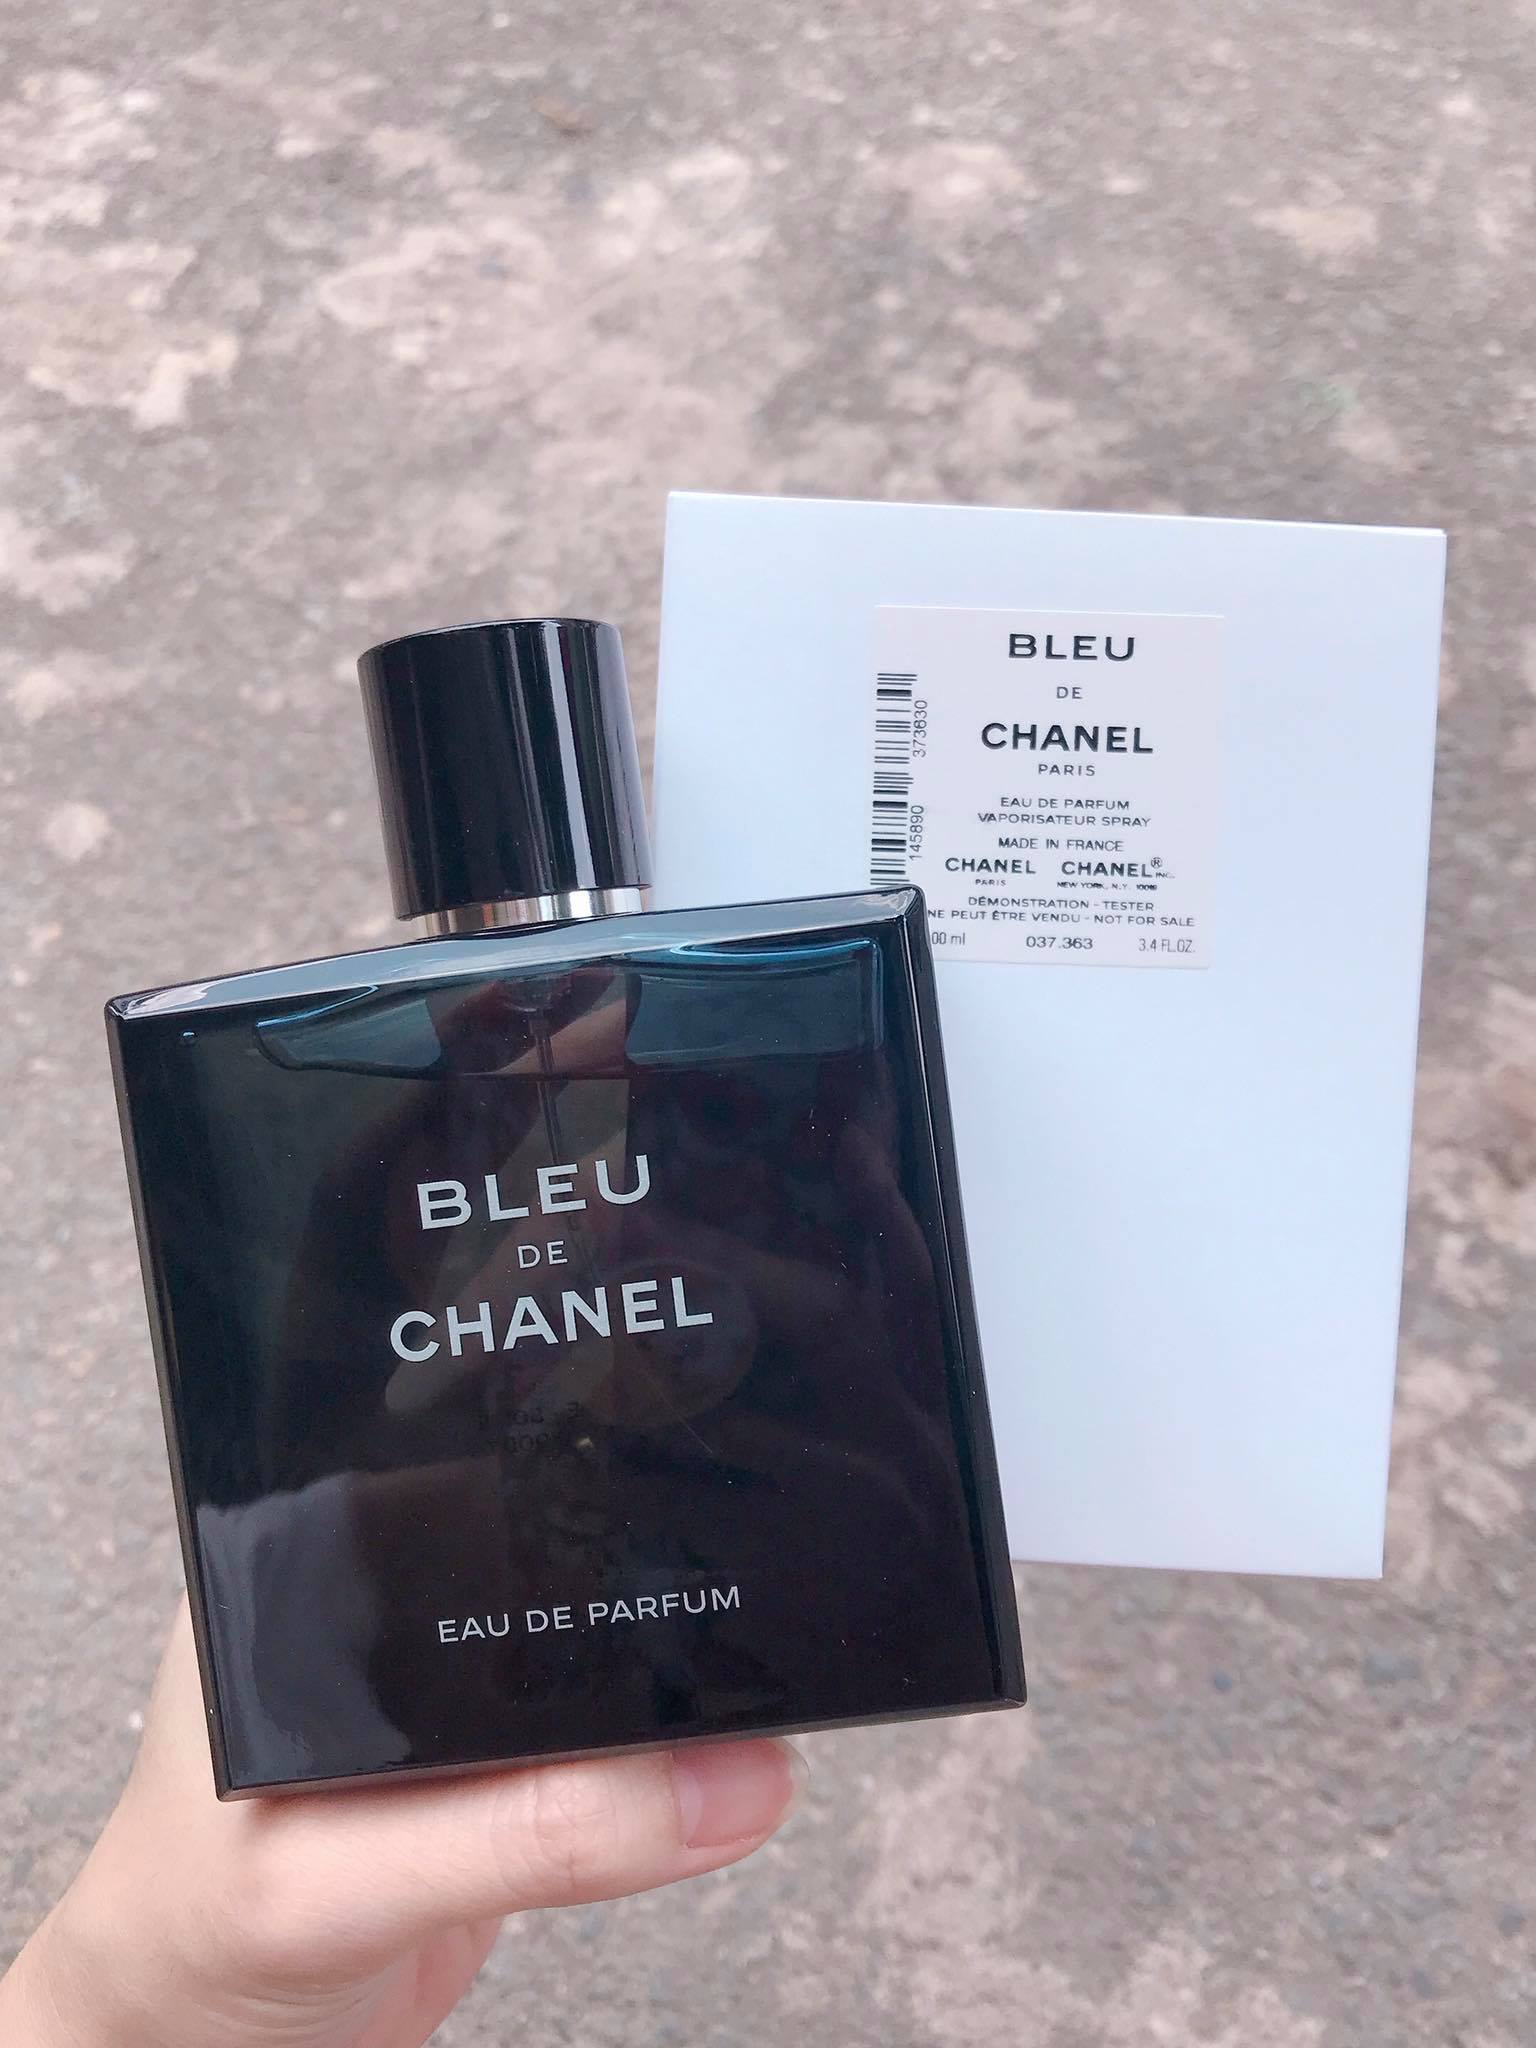 Nước hoa Bleu De Chanel Nam 100 Chính hãng Sale giá Rẻ